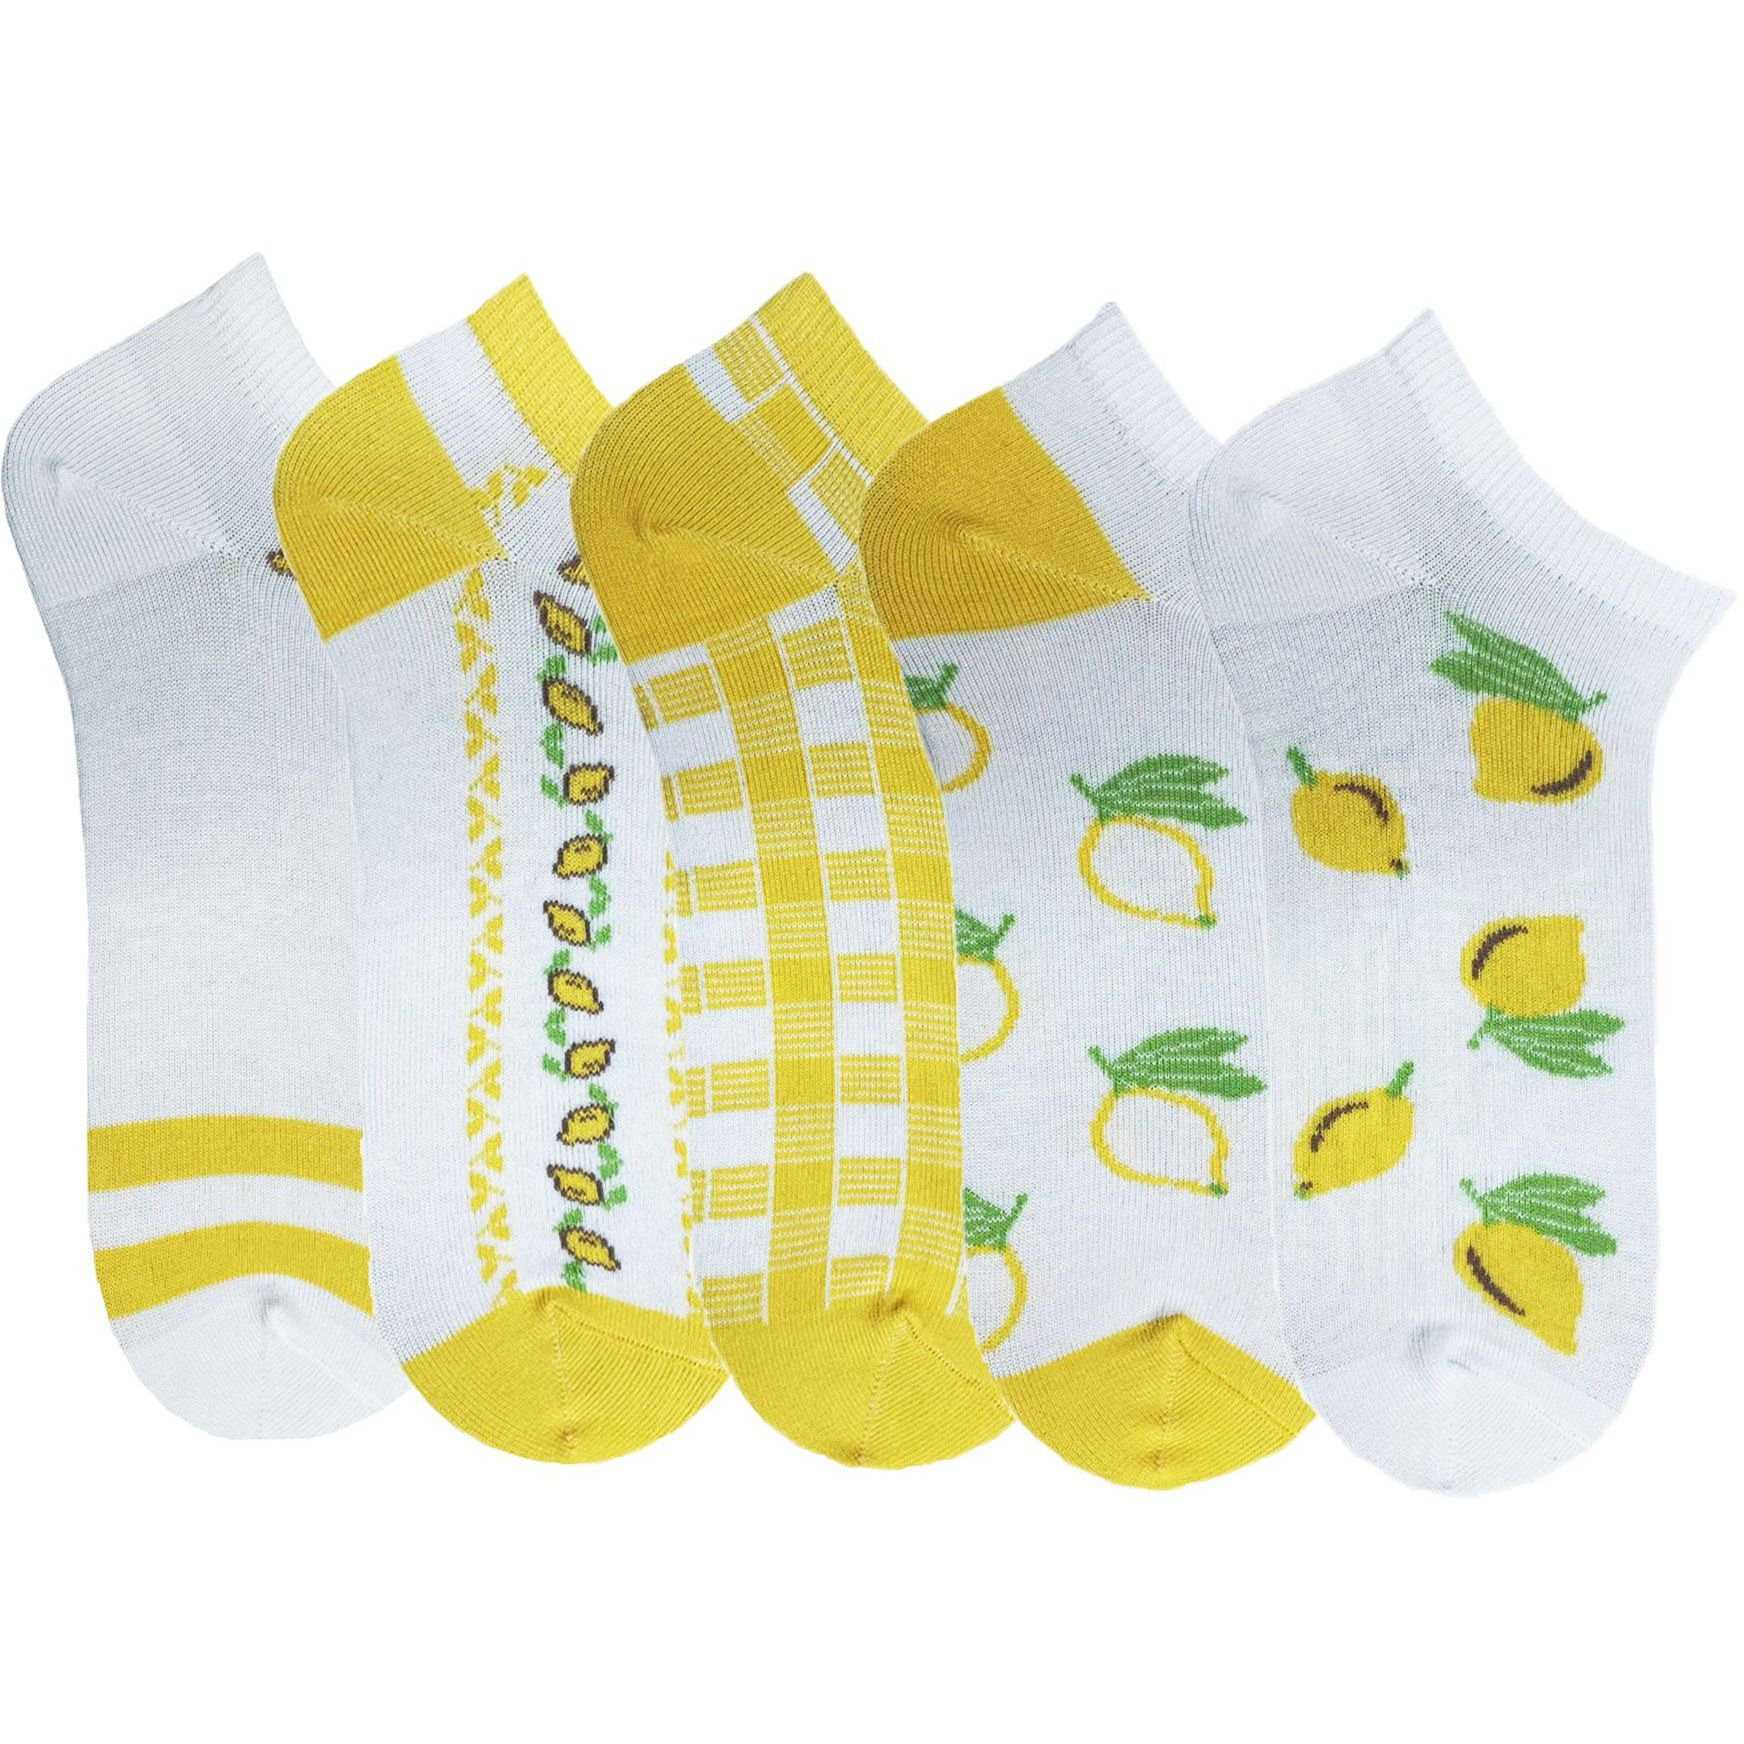 Набор носков женских Premier Socks 36-40 5 пар желтые с принтом (4820163319353) фото 1